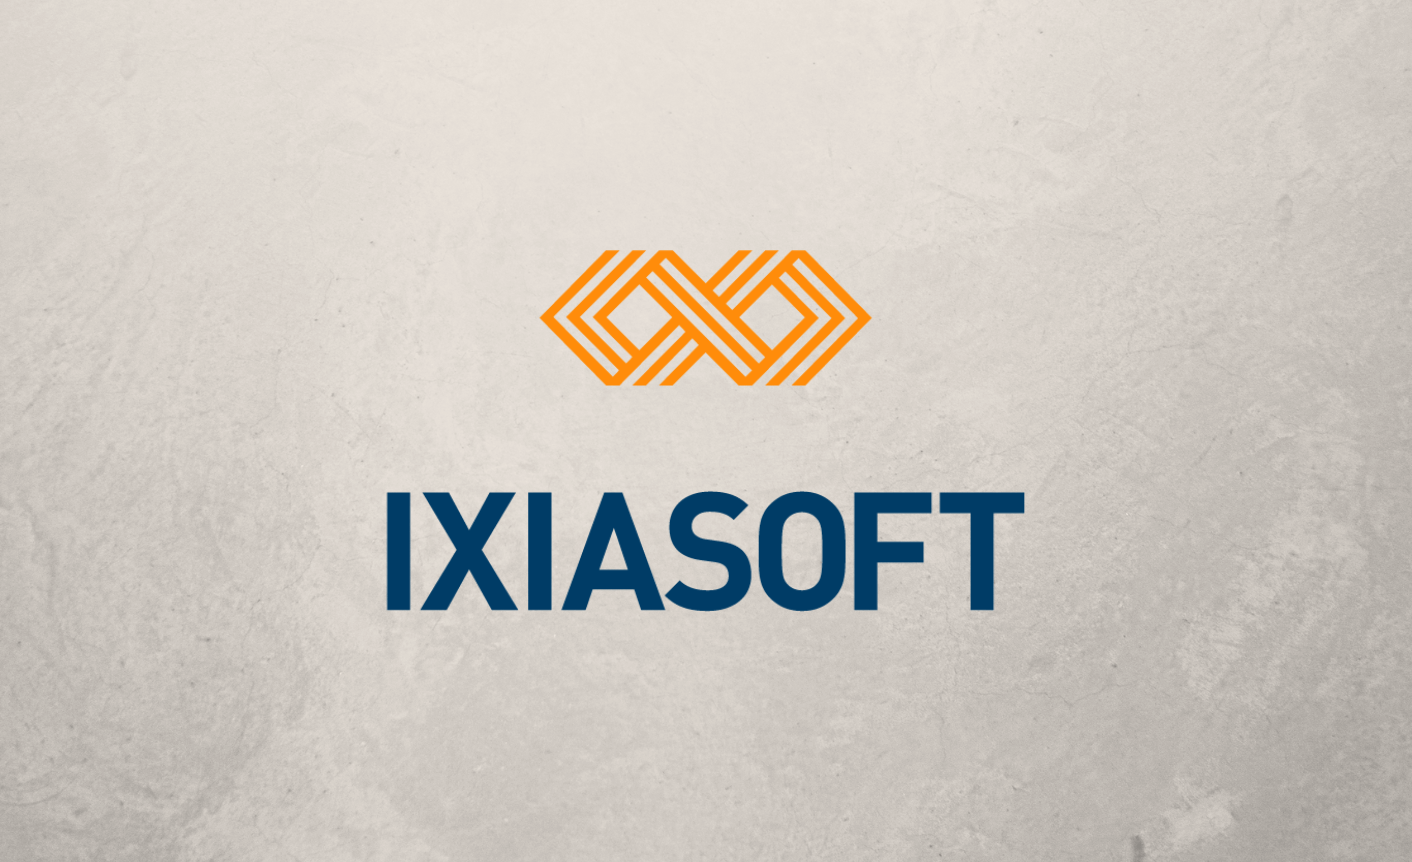 Ixiasoft logo.